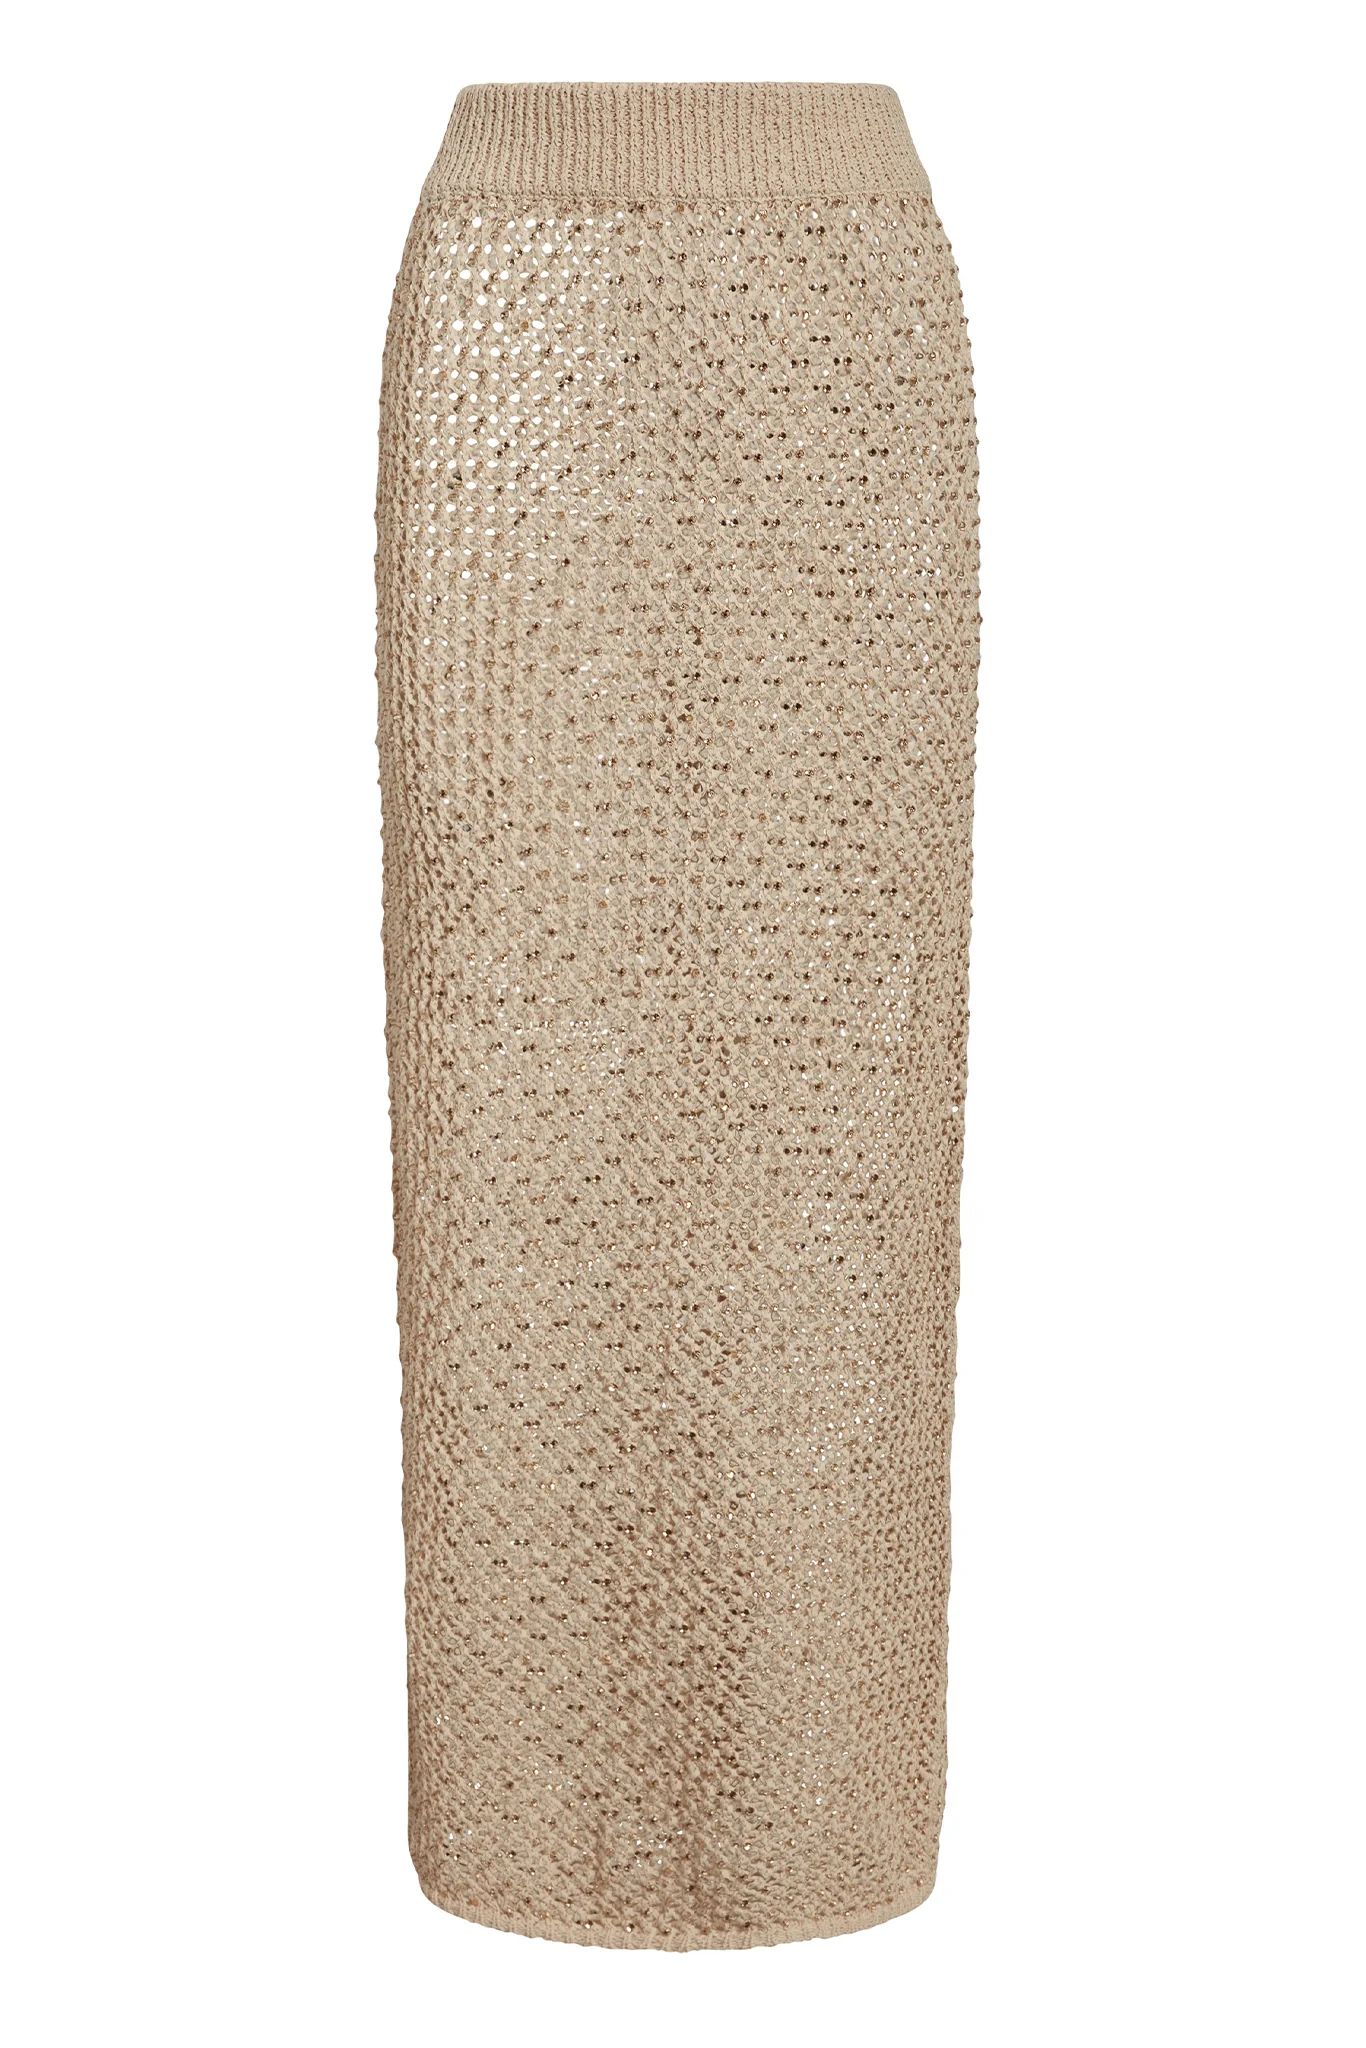 Cape May Skirt - Champagne Diamond Crochet | Monday Swimwear